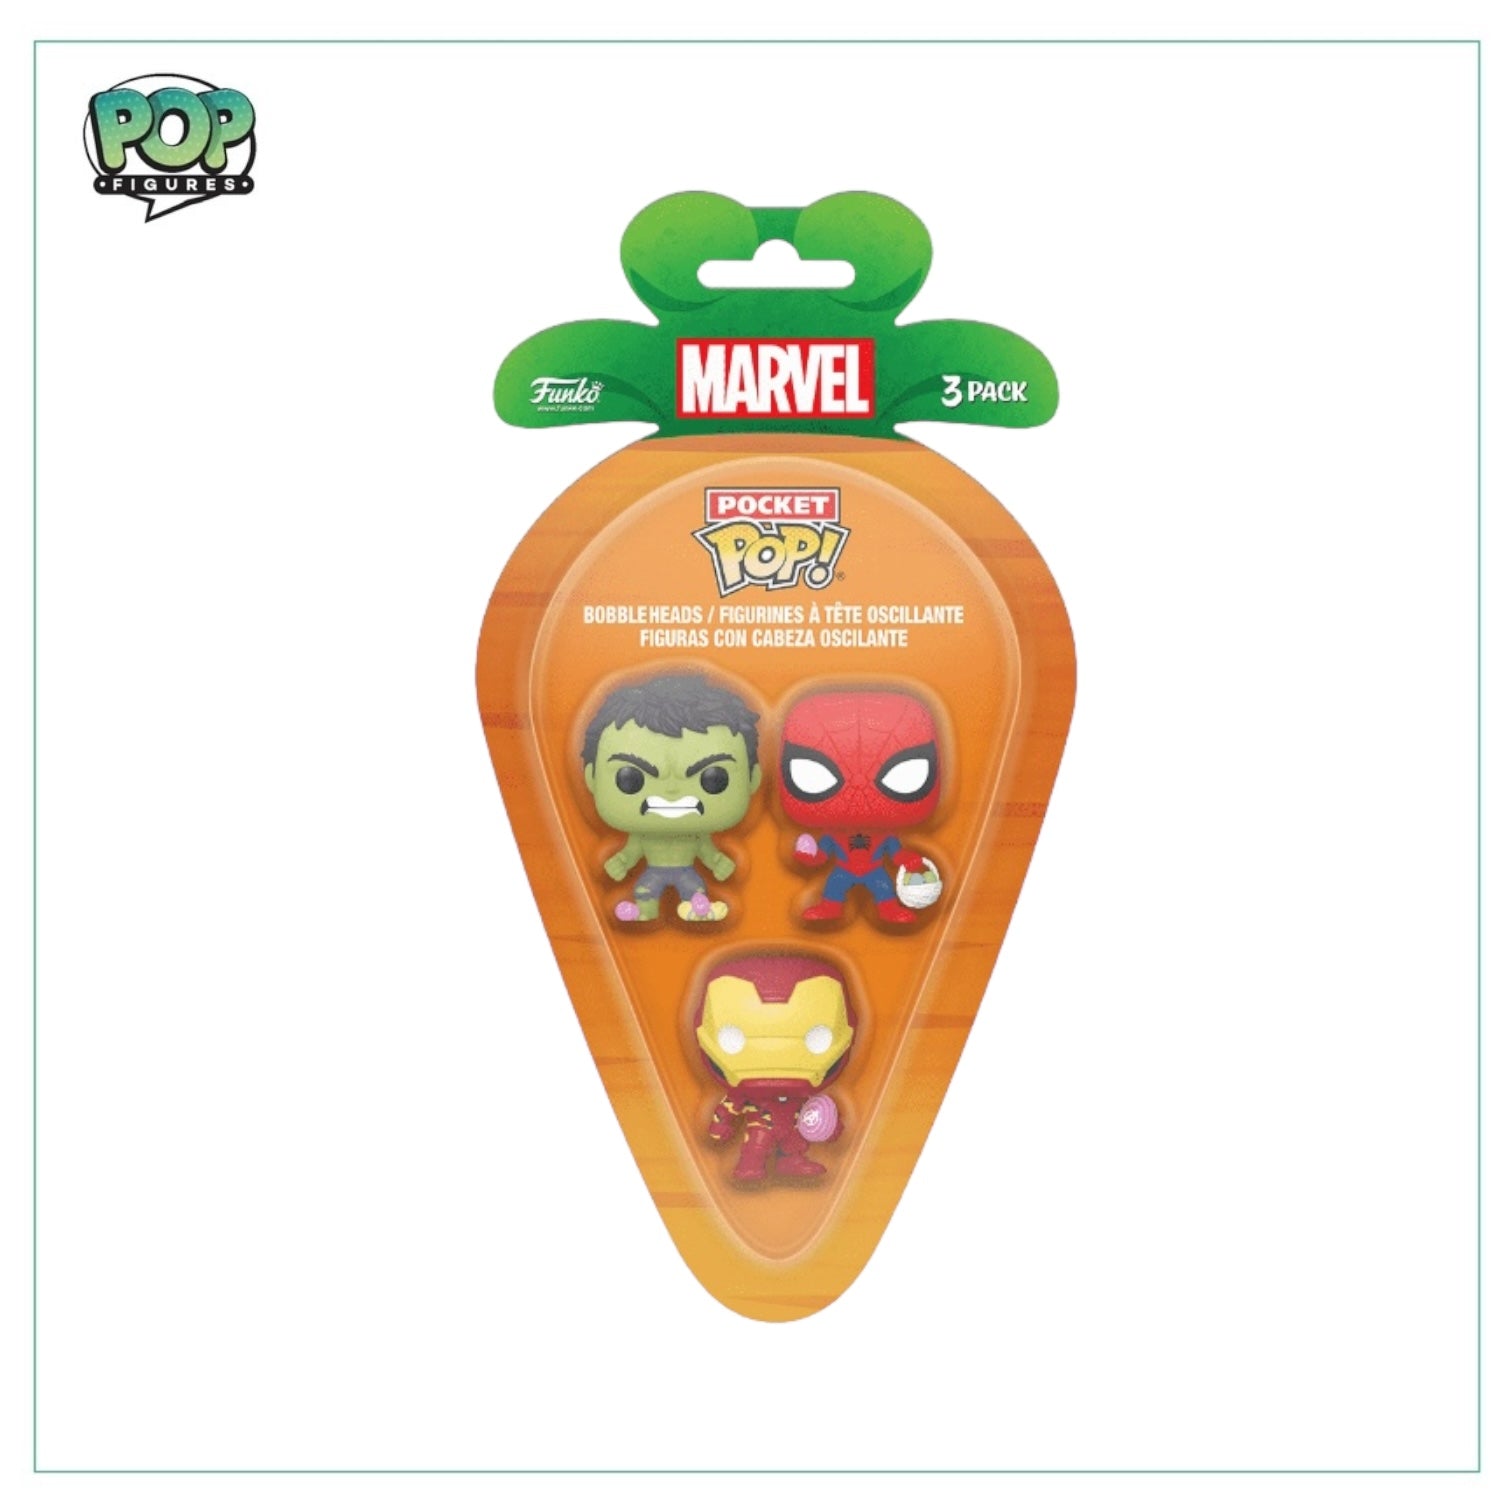 Spider-man, Iron-man, Hulk Funko Carrot Pocket Pop - Marvel